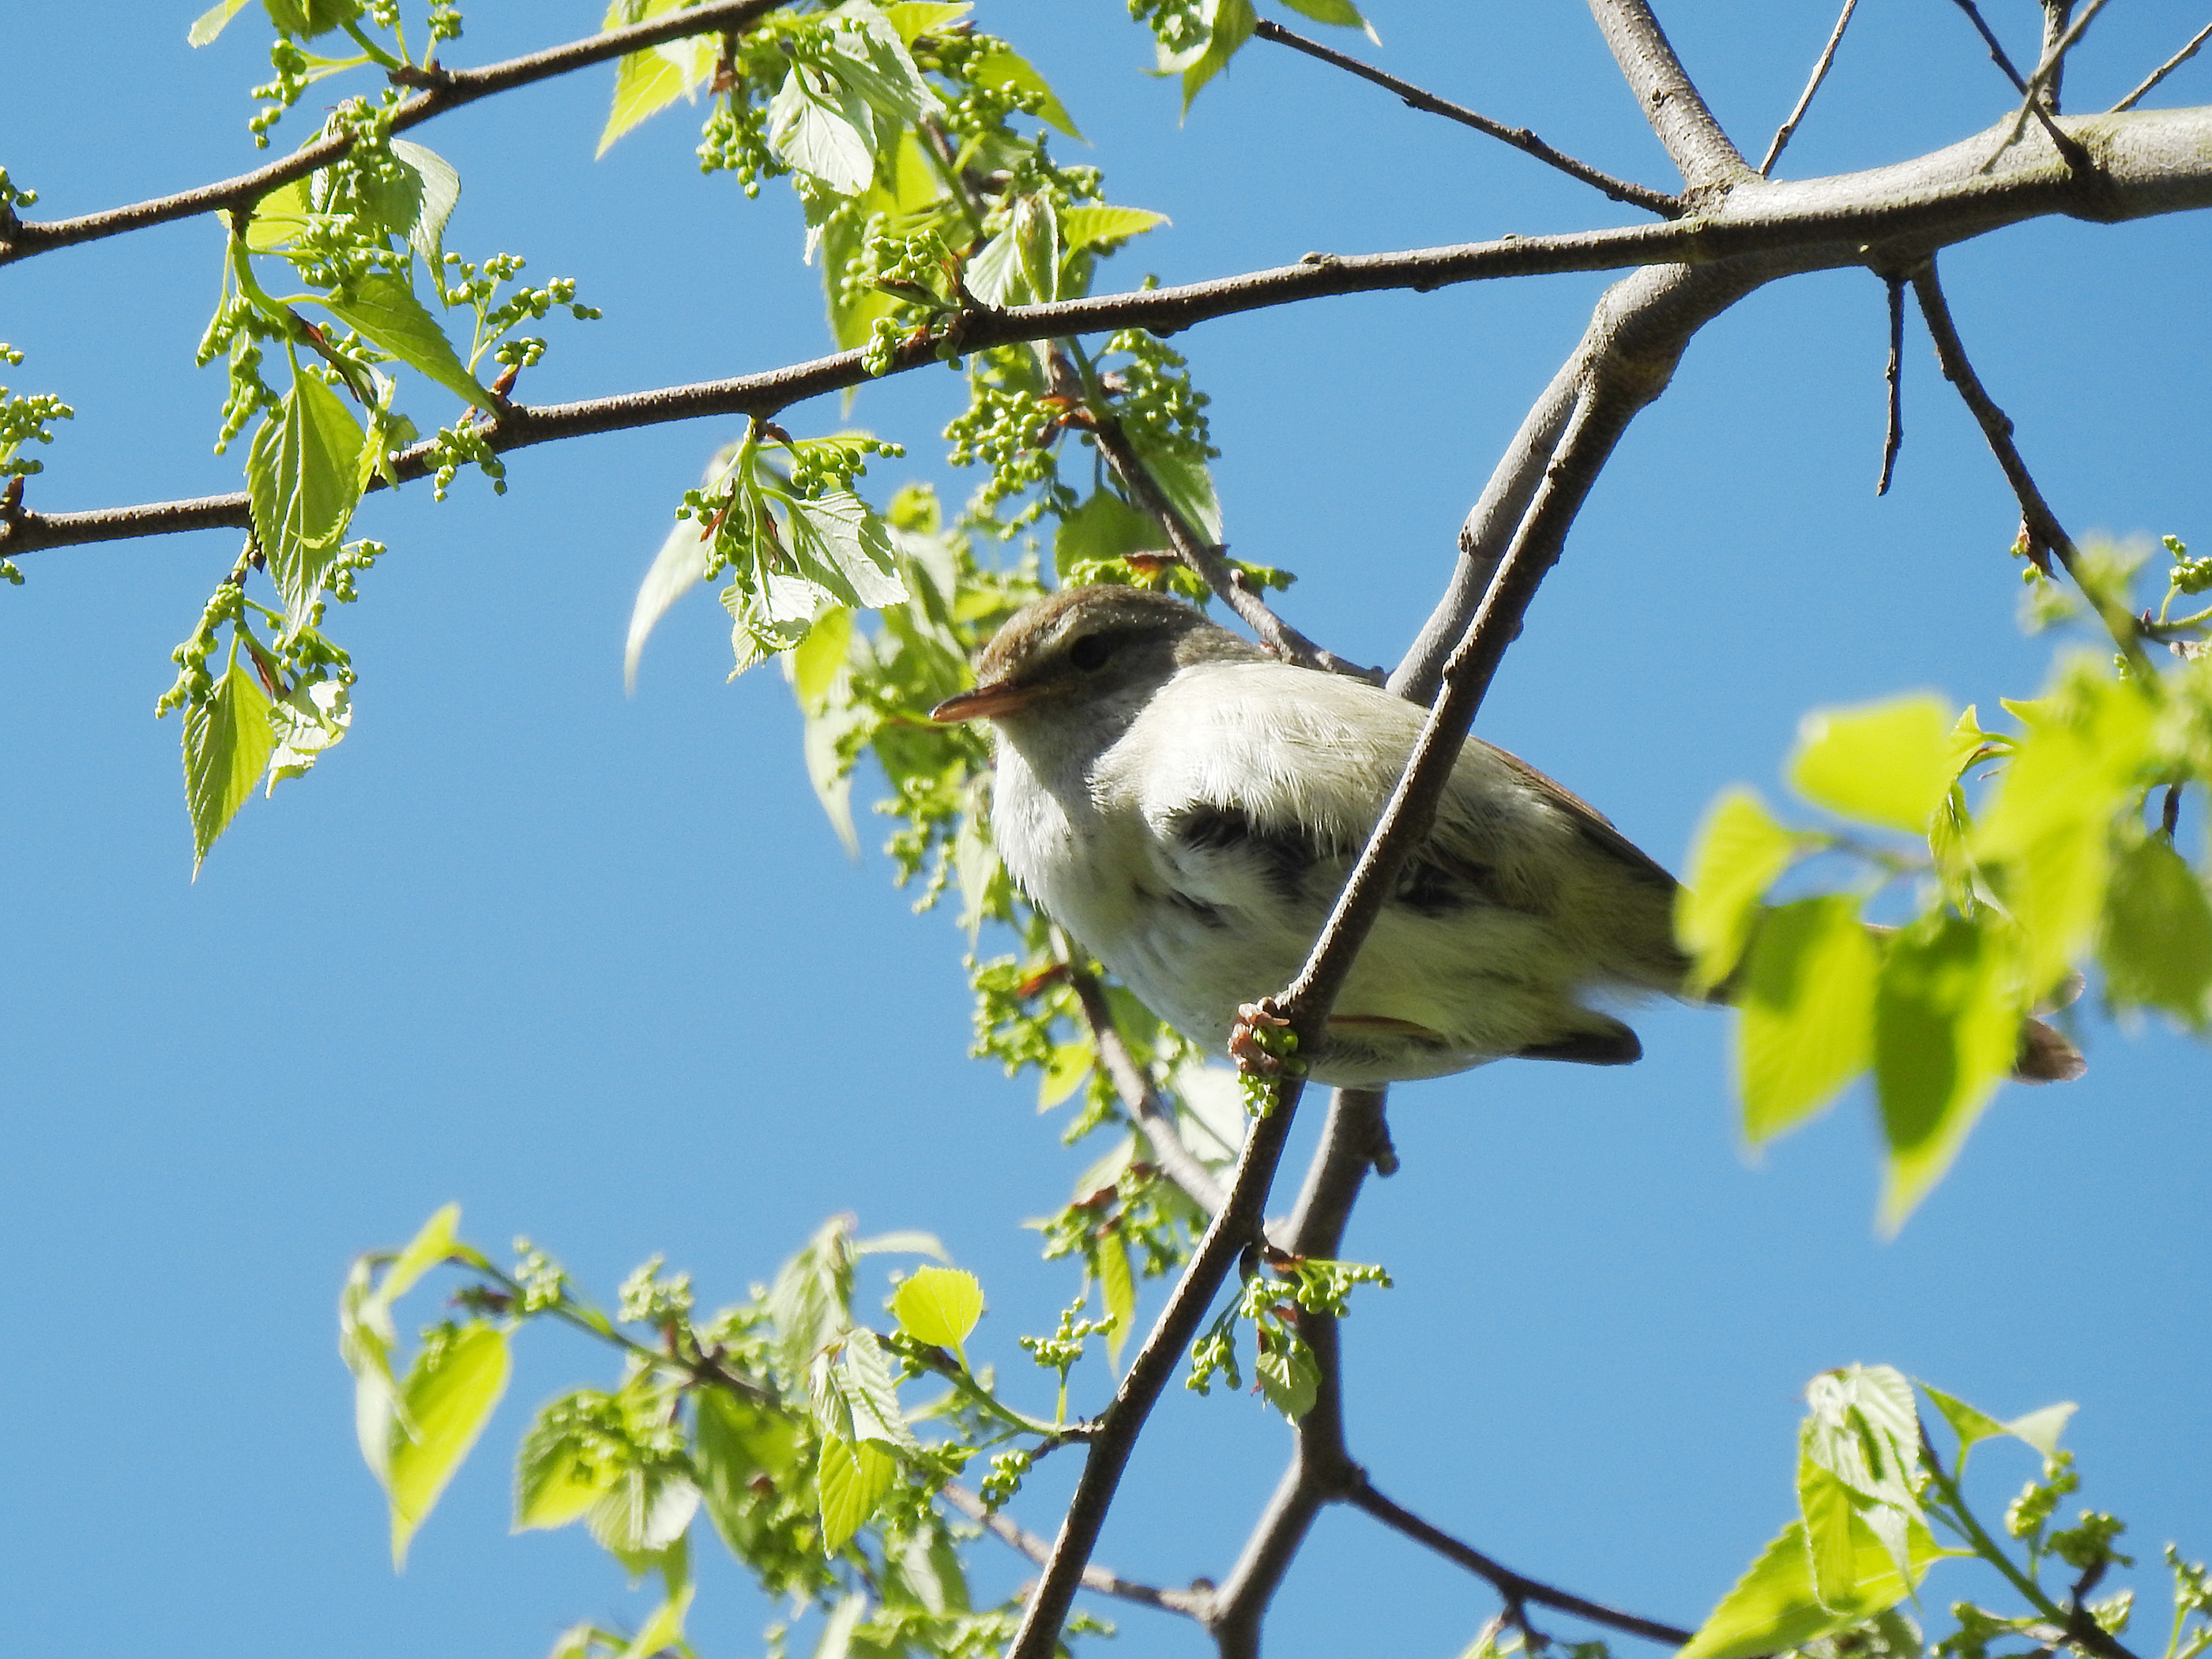 ウグイス 三保市民の森19 みどりの鳥 横浜市北部 緑区周辺の野鳥紹介